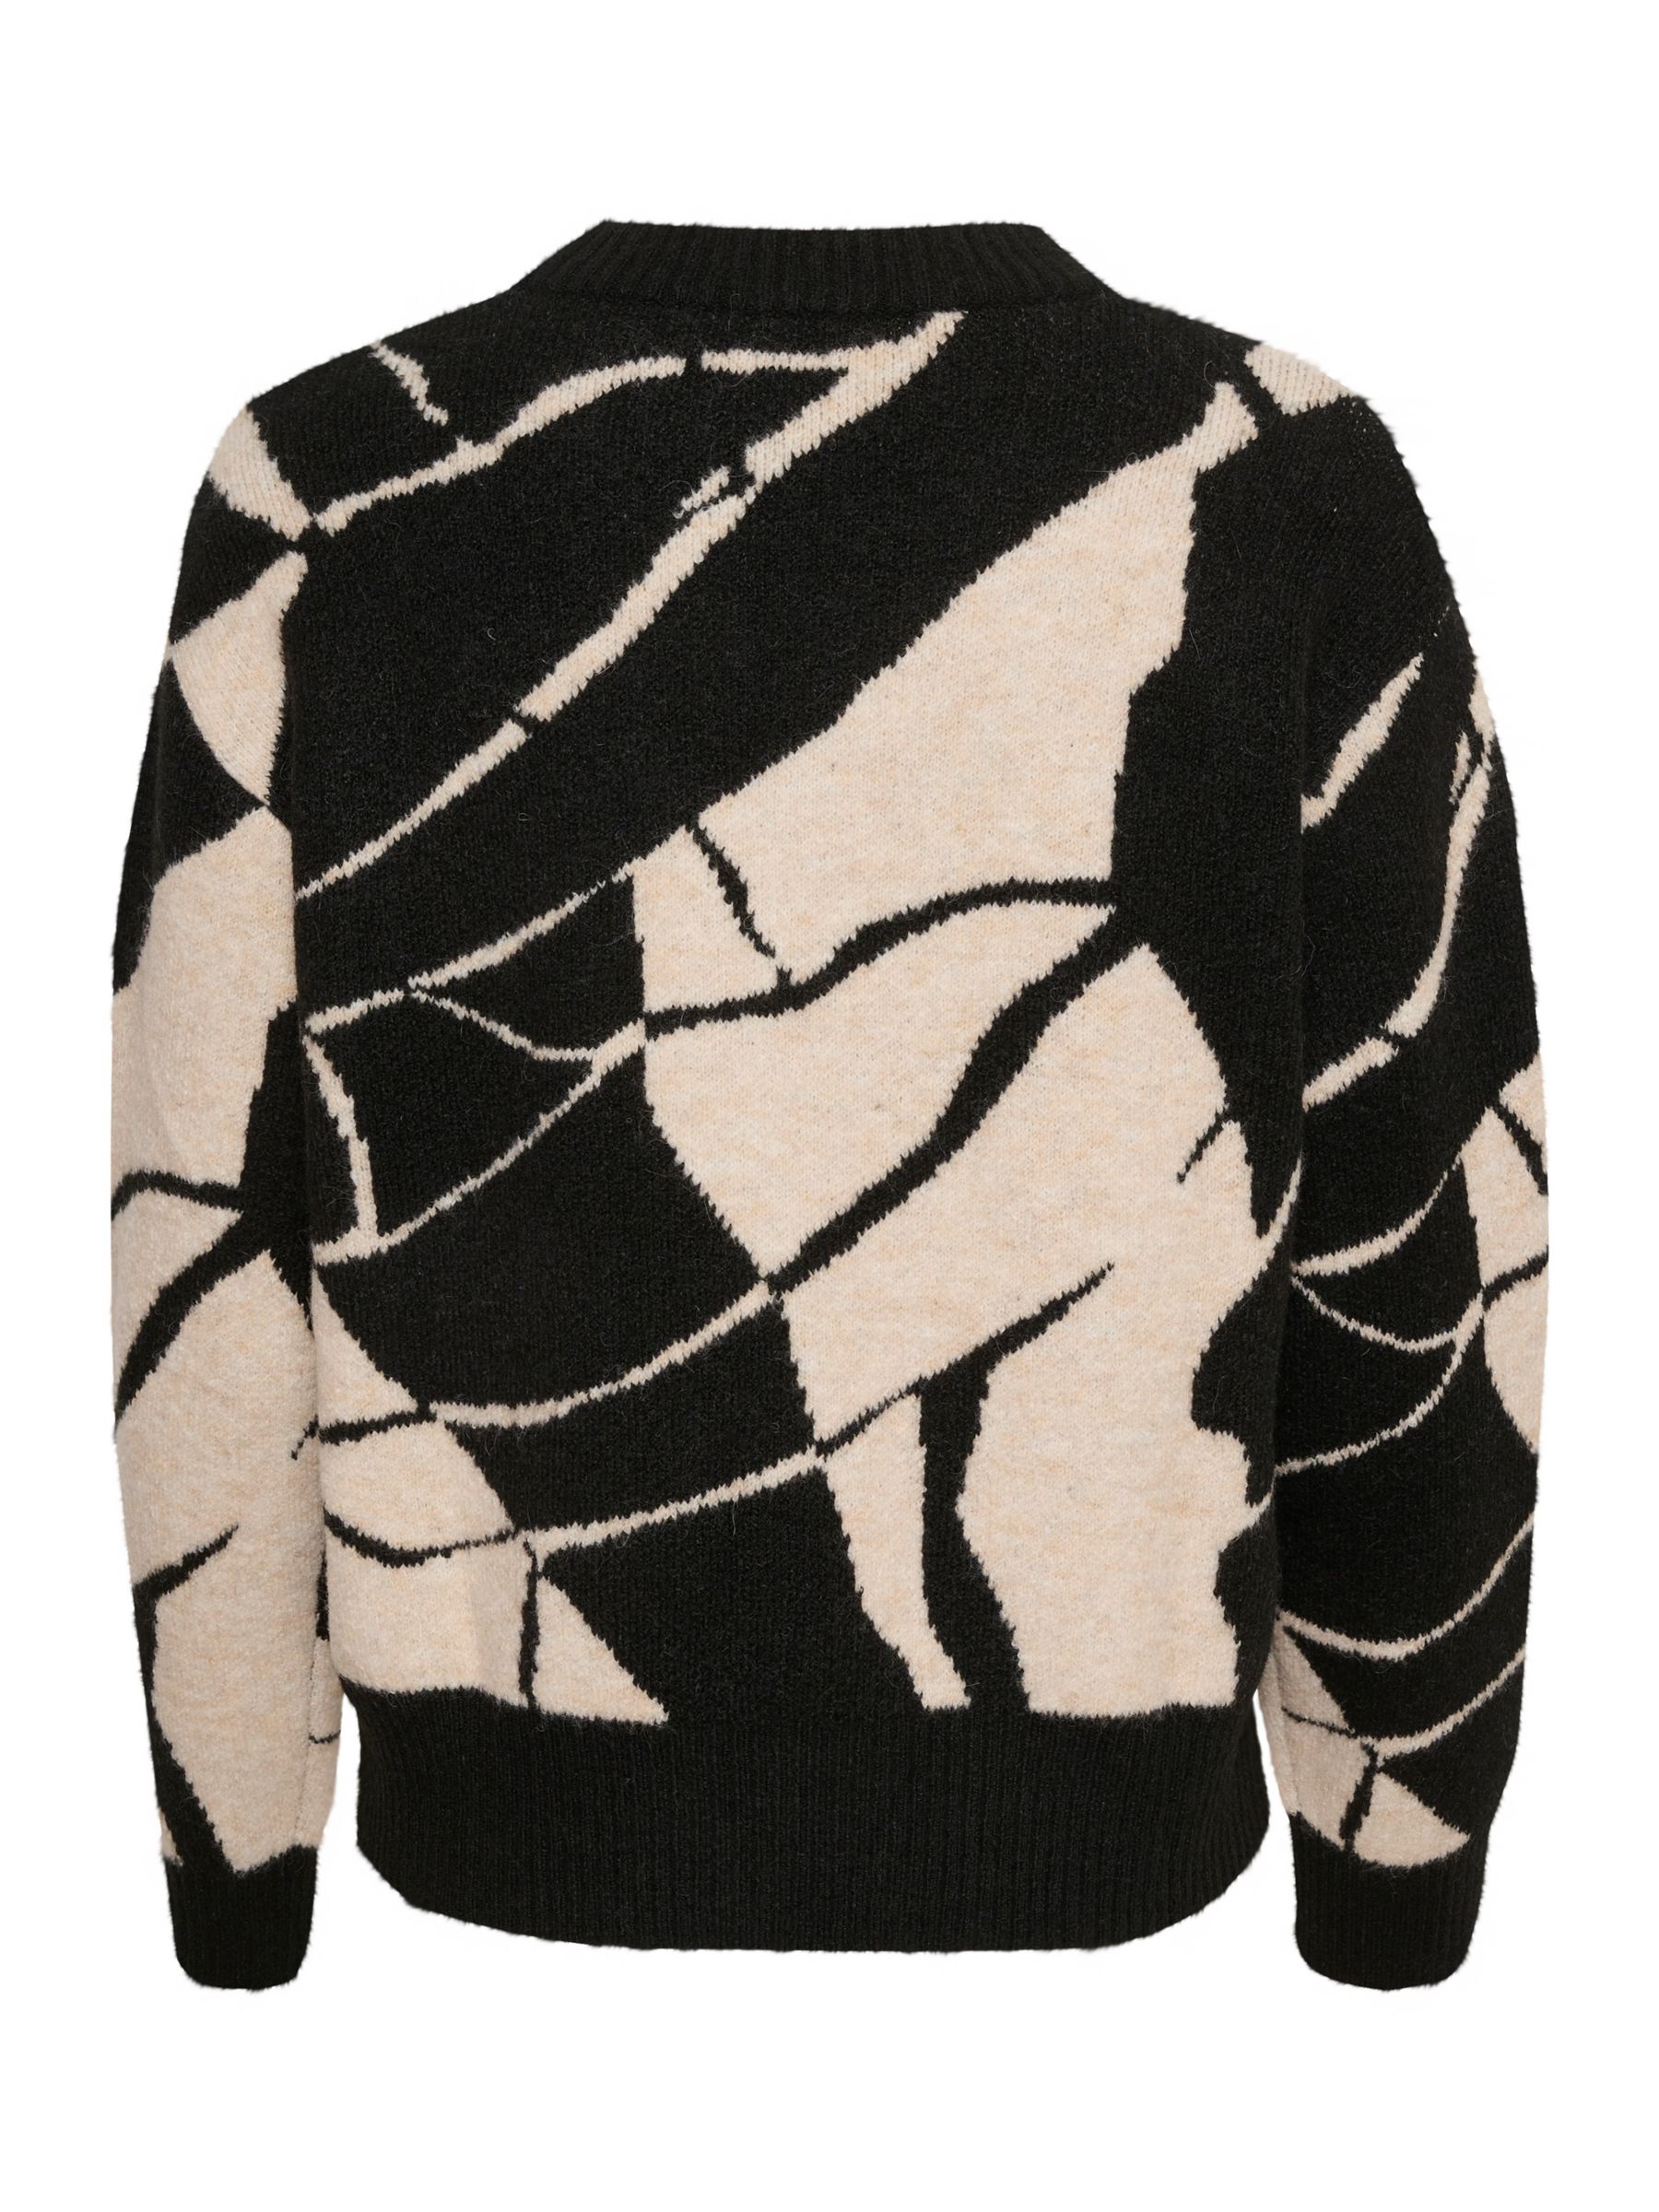 Buy Soaked In Luxury Rakel Wool Blend Graphic Print Jumper, Black & White Online at johnlewis.com